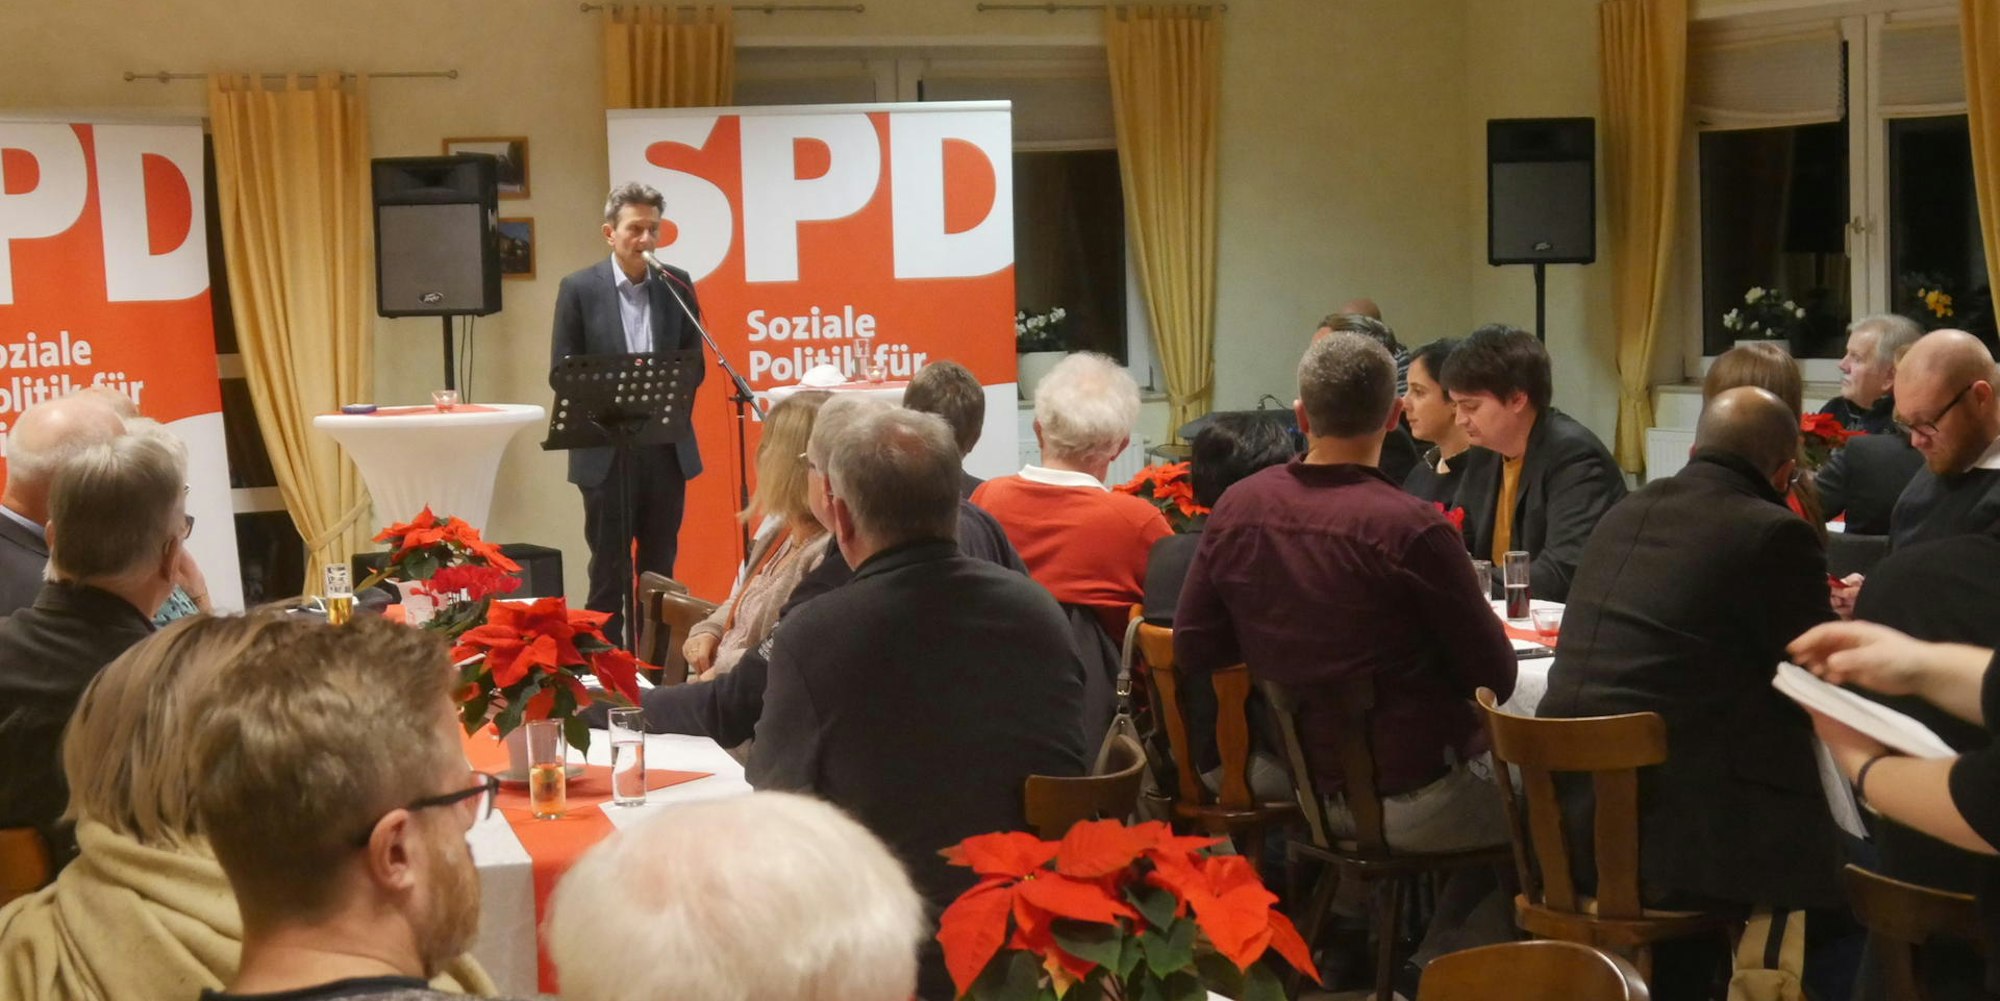 Muetzenisch_Puttenessen_SPD